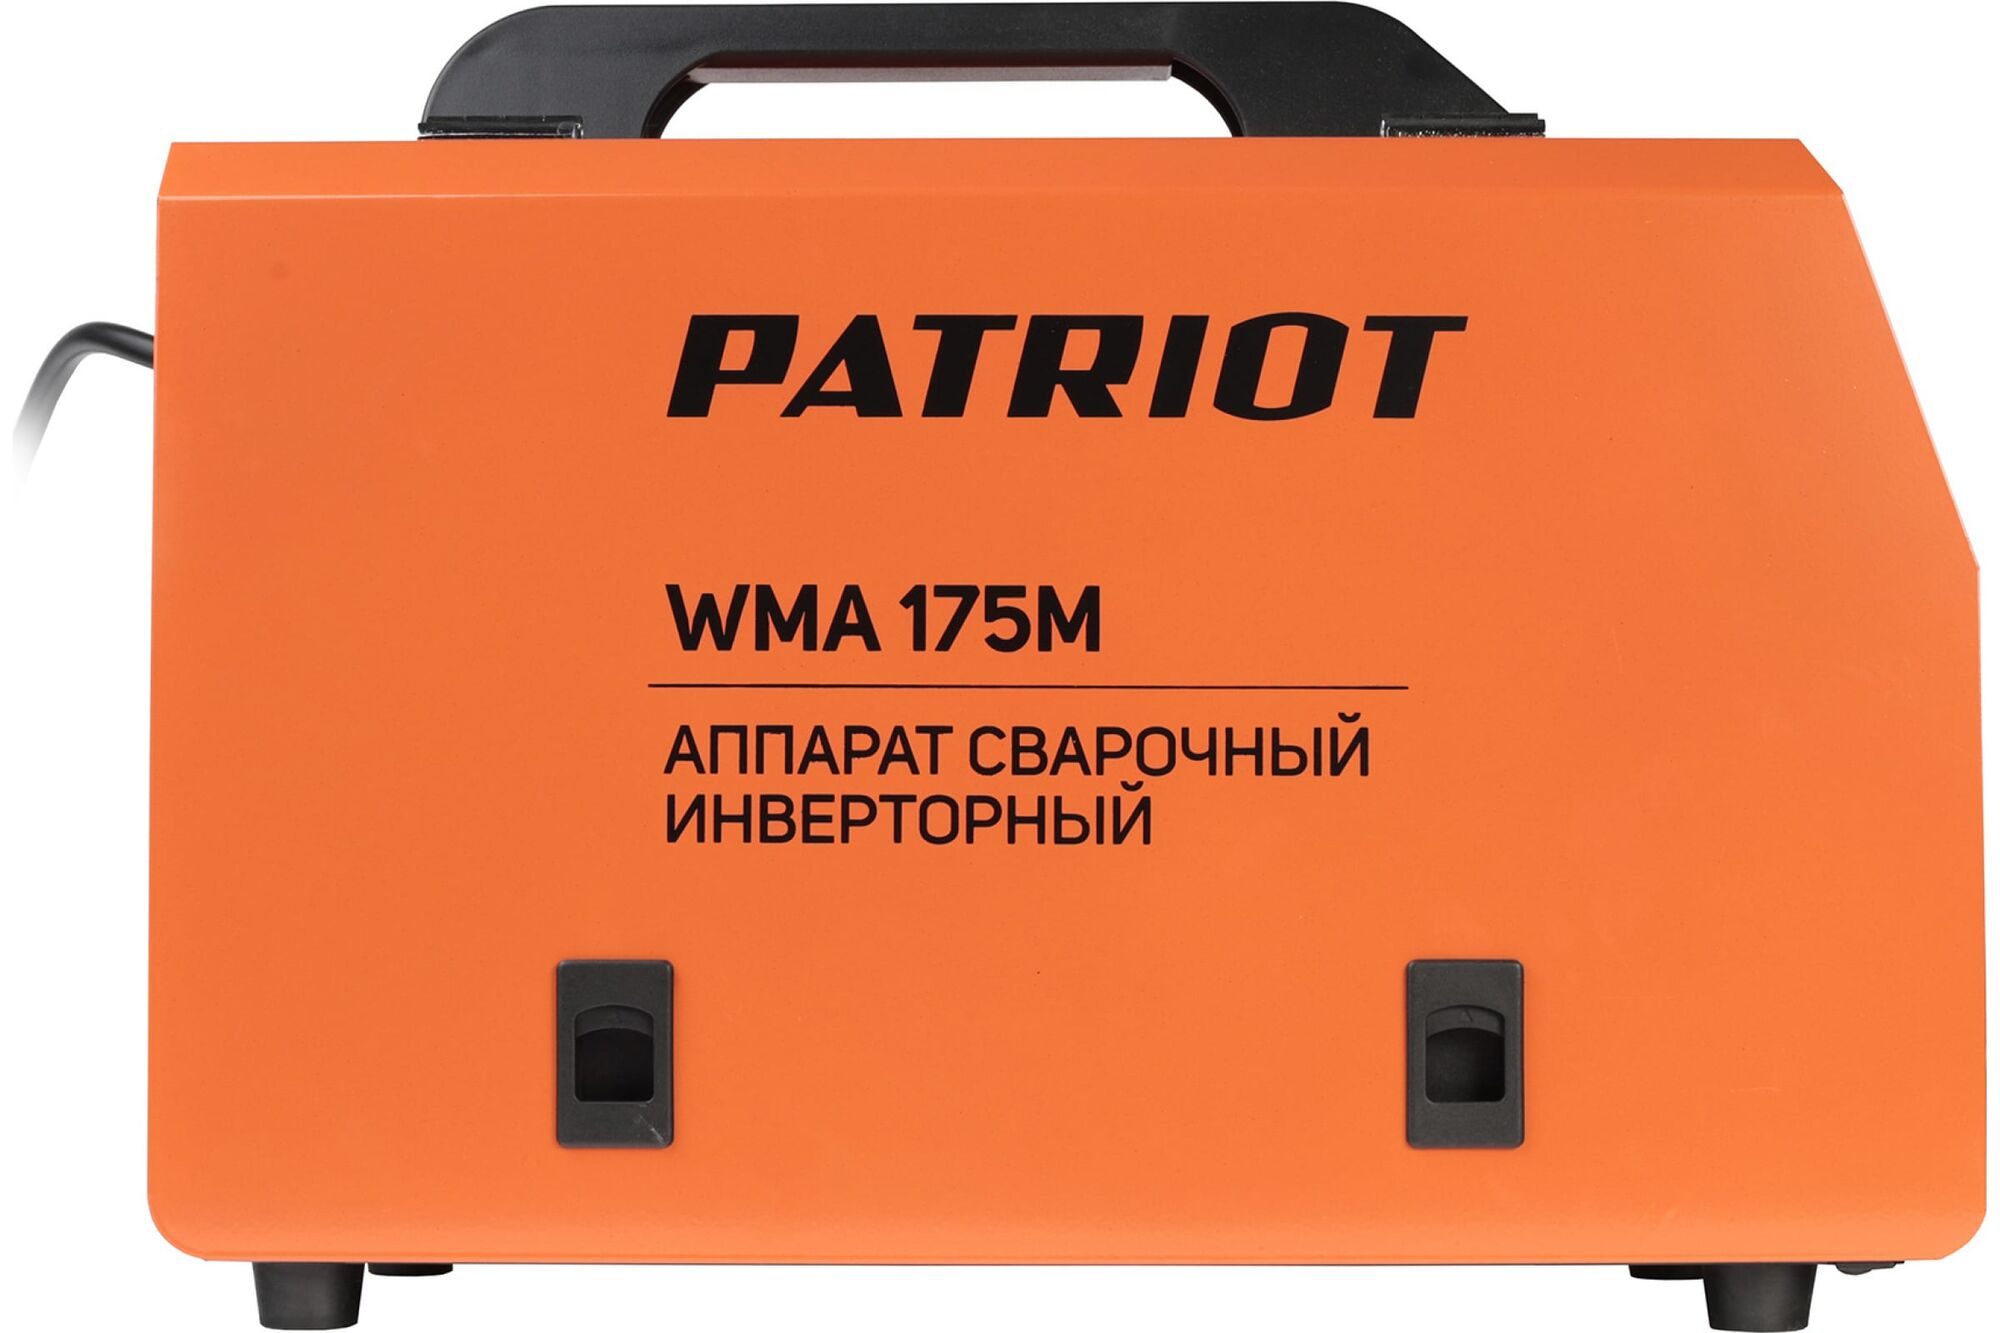 Сварочный инверторный полуавтомат PATRIOT WMA 175M MIG/MAG/MMA, полуавтоматическая сварка в среде 605302150 Patriot 8